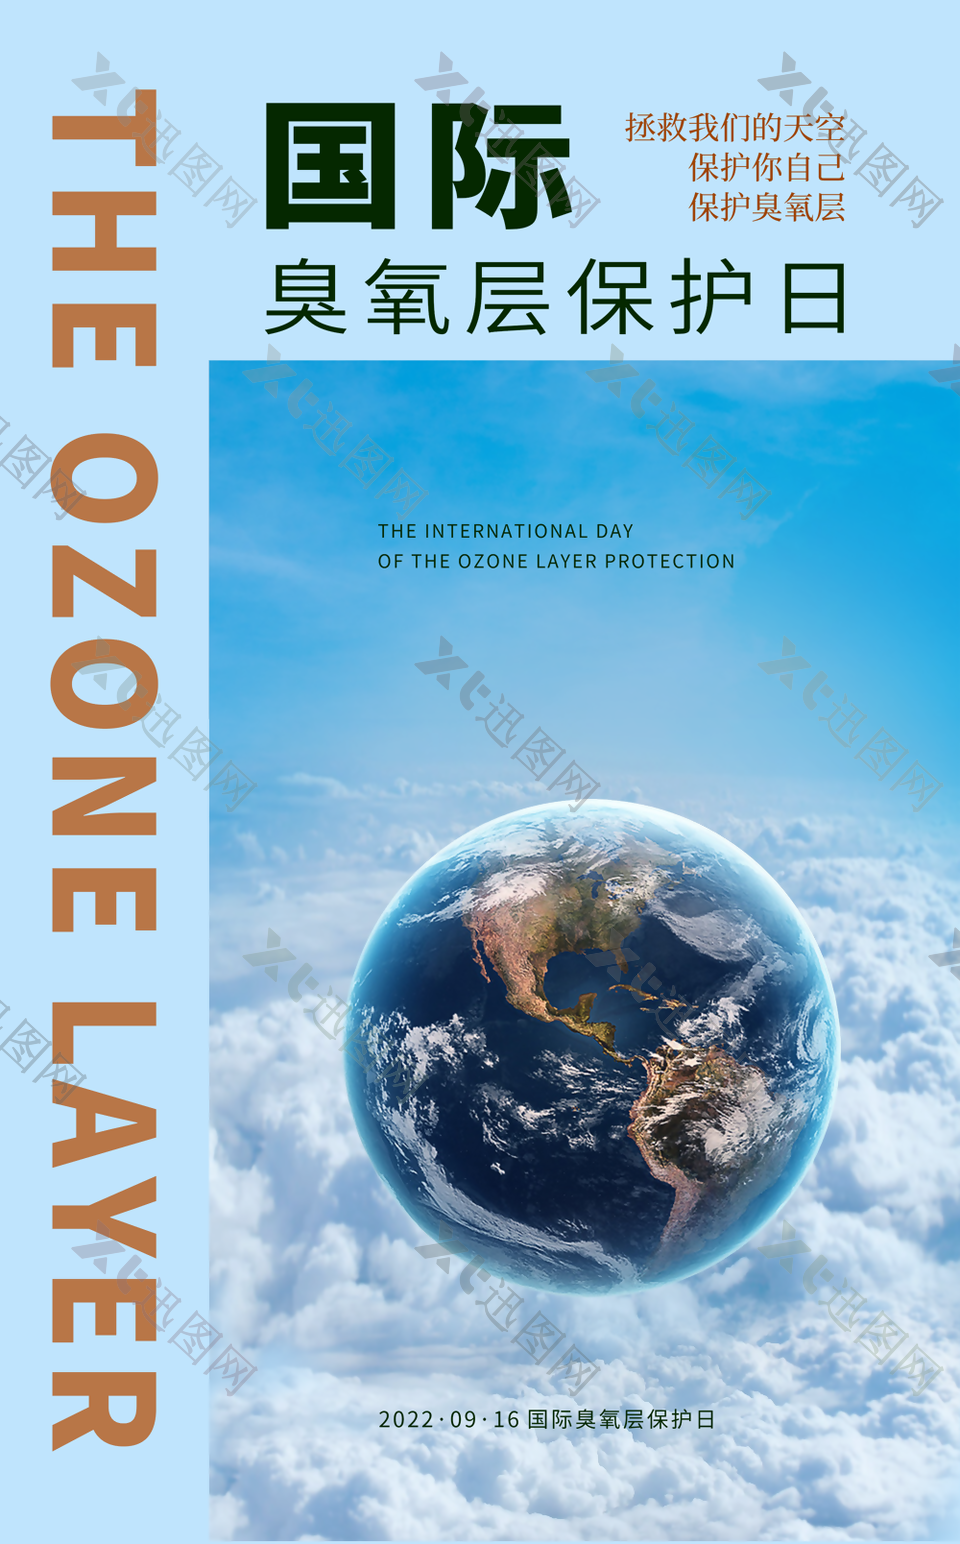 保护地球国际臭氧层保护日宣传图片